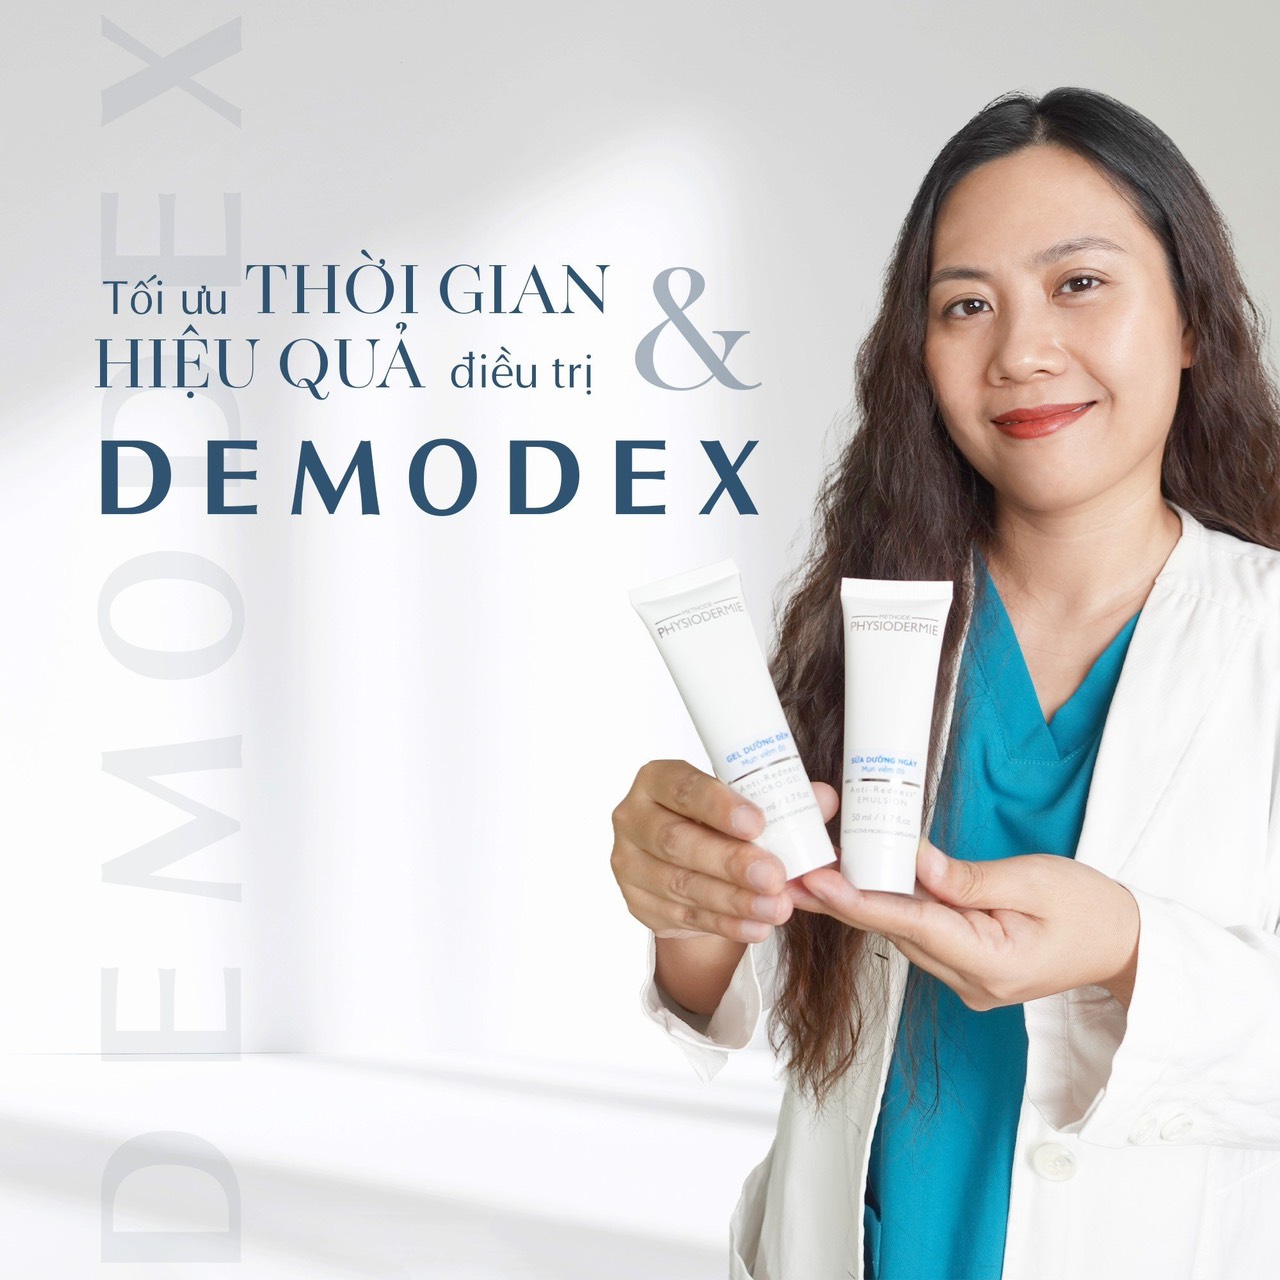 Bộ đôi dược mỹ phẩm điều trị viêm da do Demodex đã được bác sĩ Nhung ứng dụng vào phác đồ trị liệu thực tế thành công